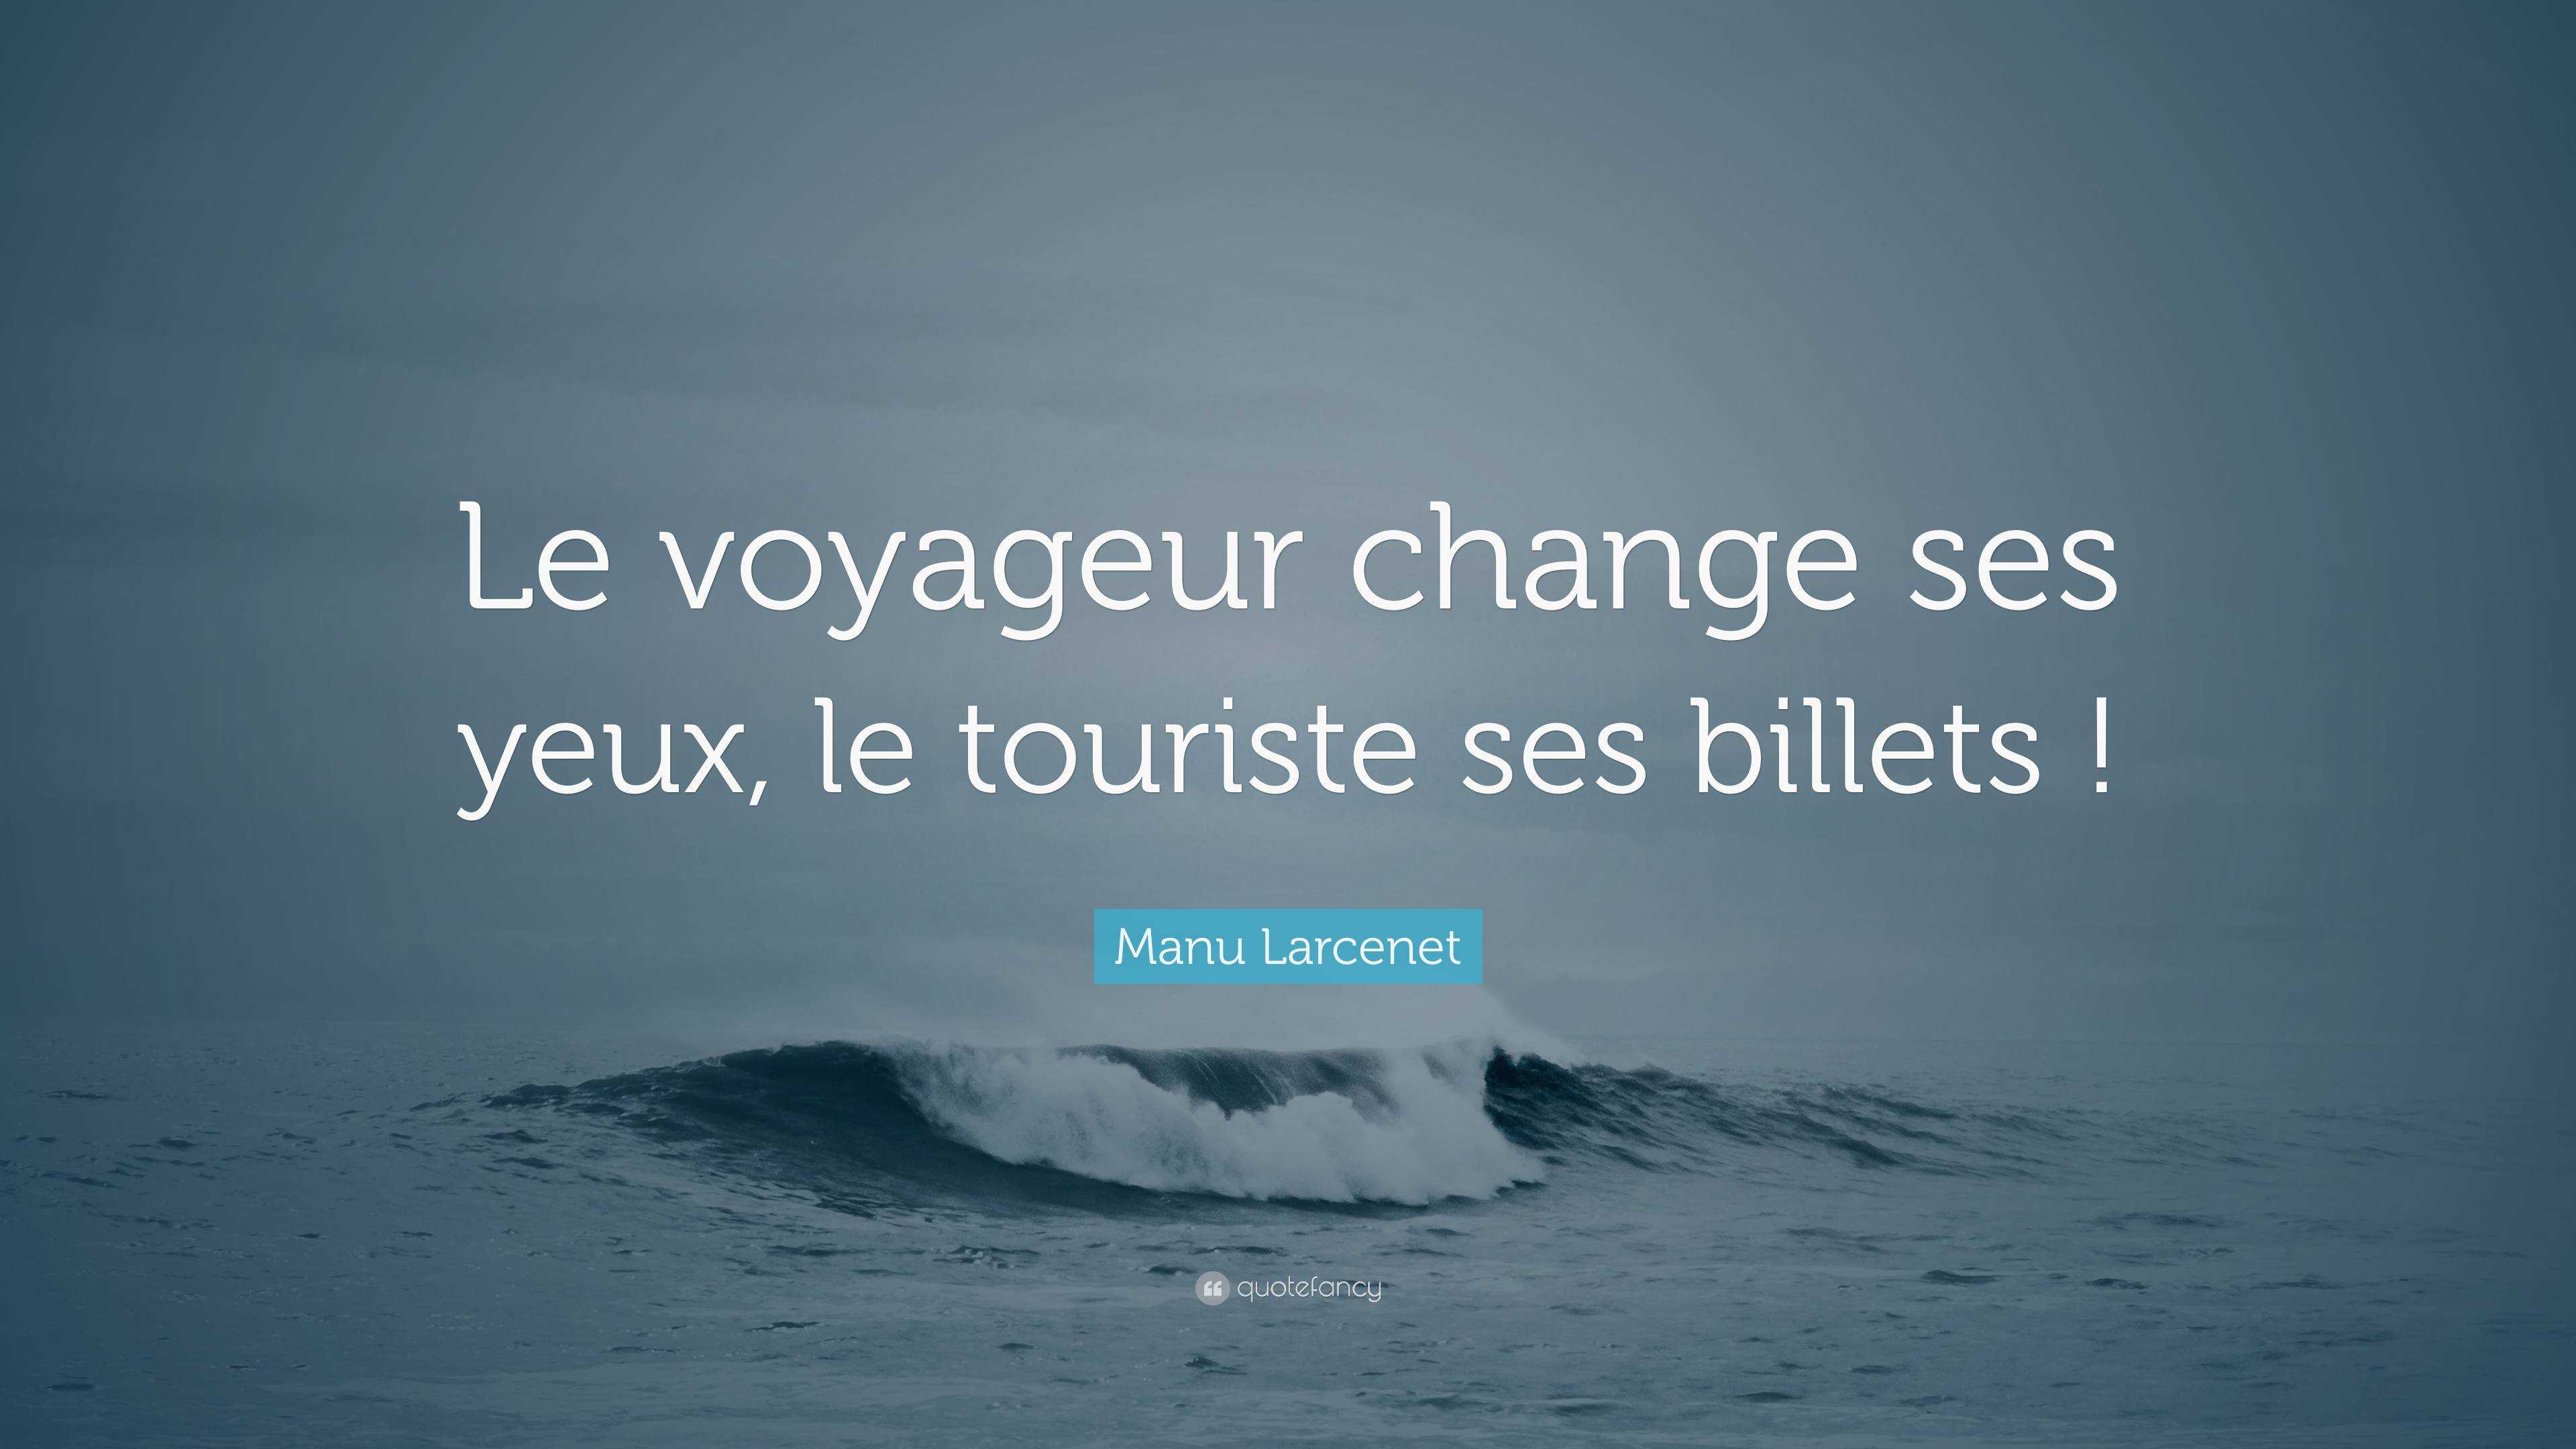 Manu Larcenet Quote: “Le voyageur change ses yeux, le touriste ses ...